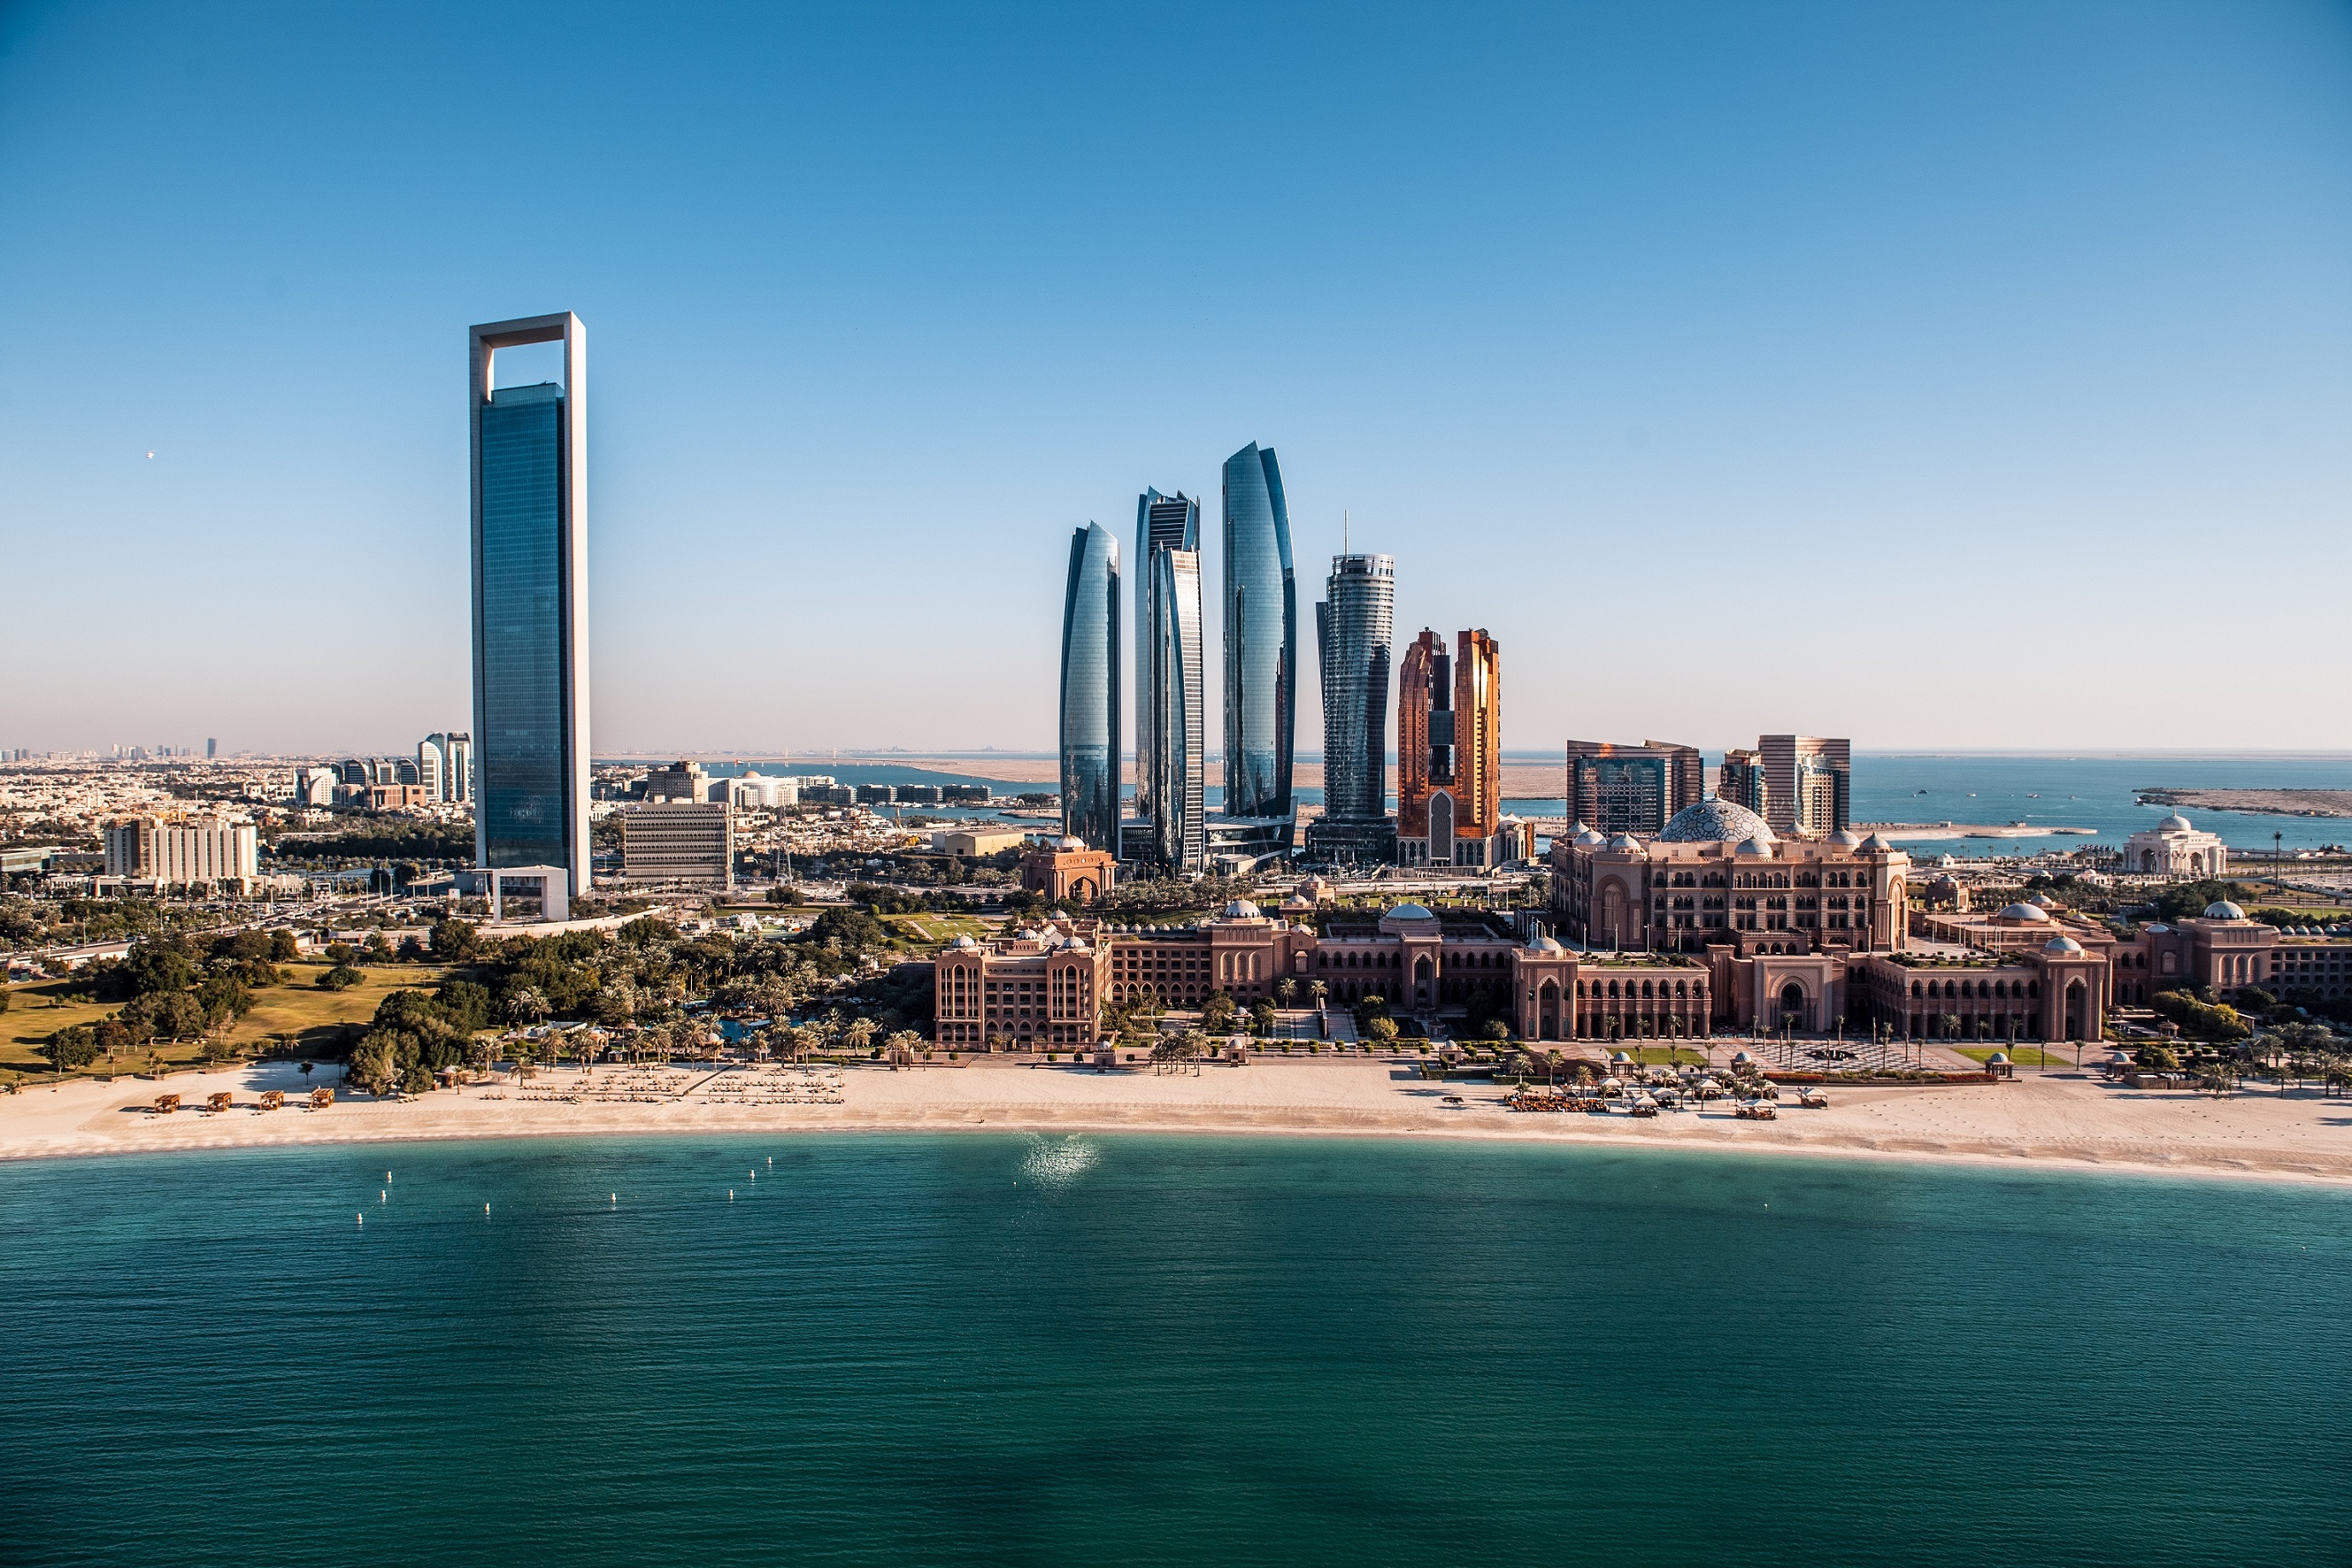 أبوظبي أفضل وجهة تسويقية لسياحة الأعمال في الصين